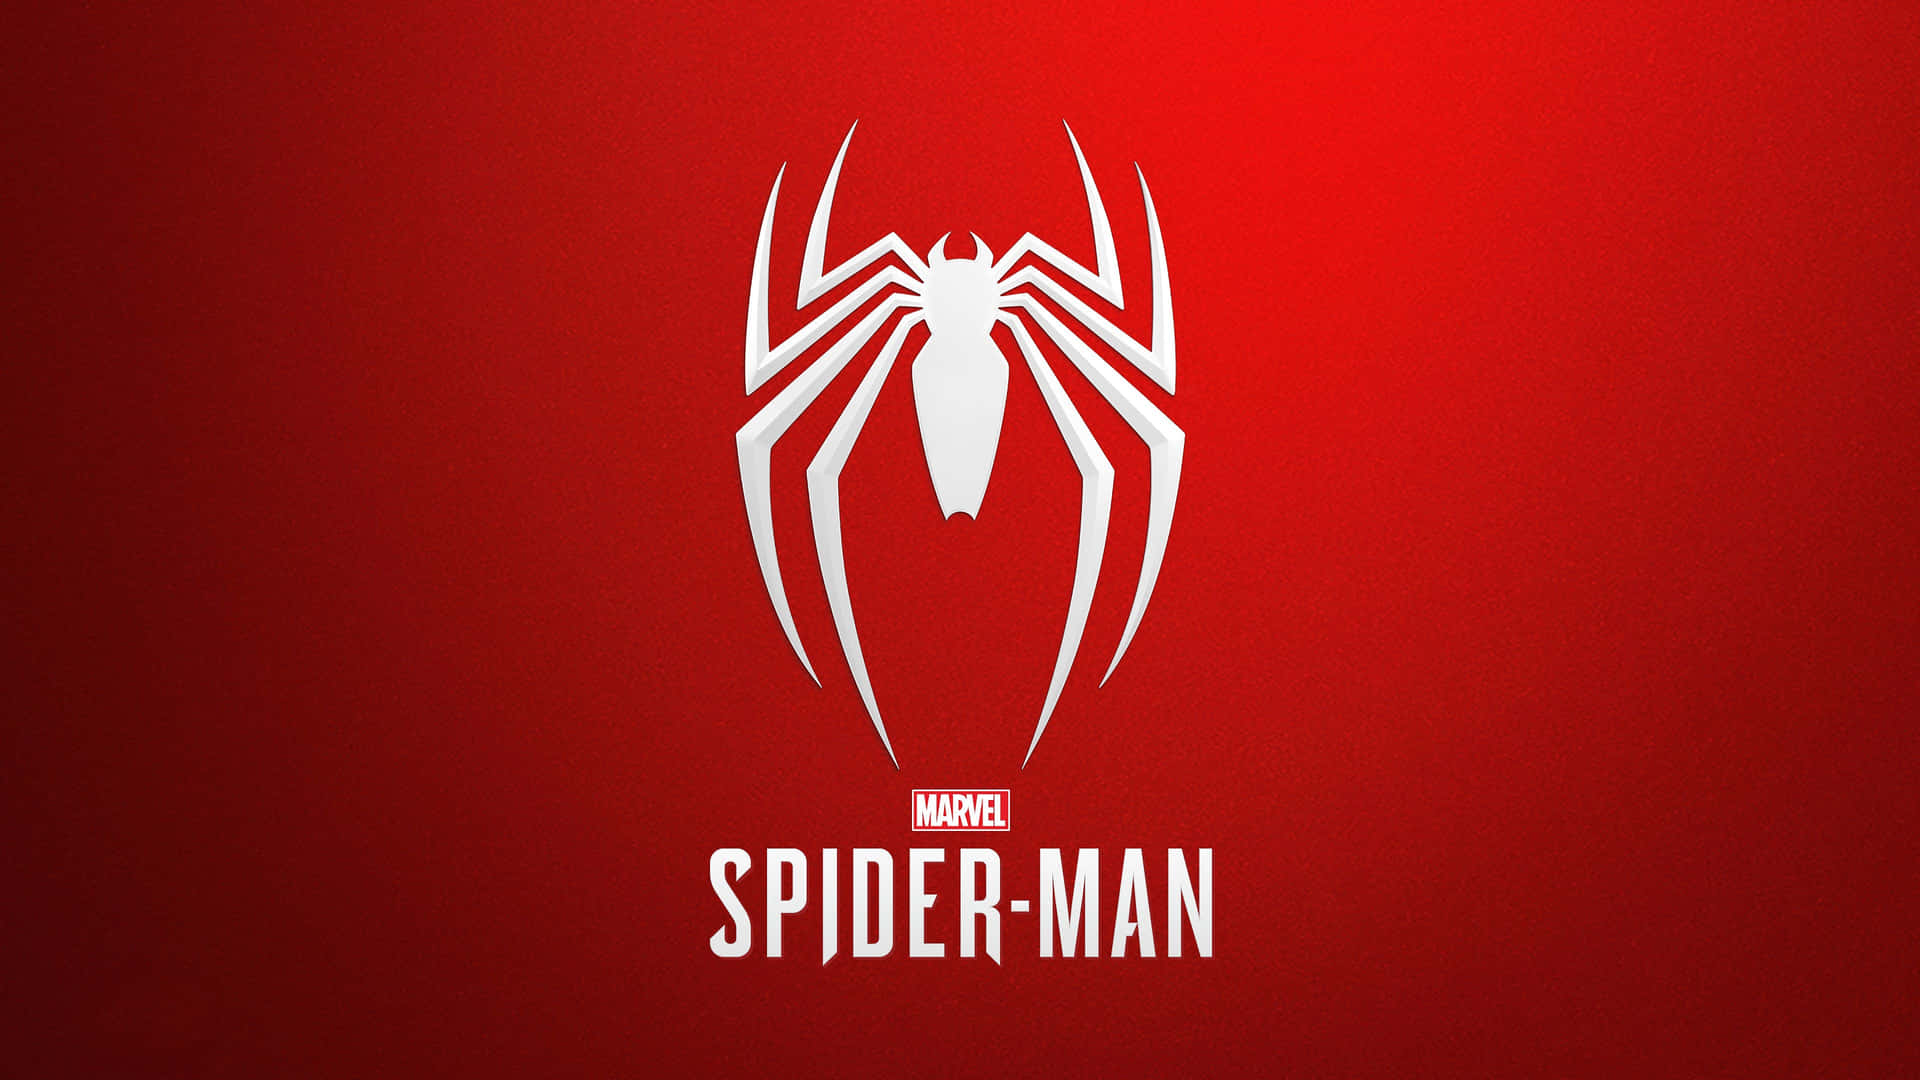 Spiderman Ps4 4k Logo: Spider Man Ps4 4k Logo. Wallpaper